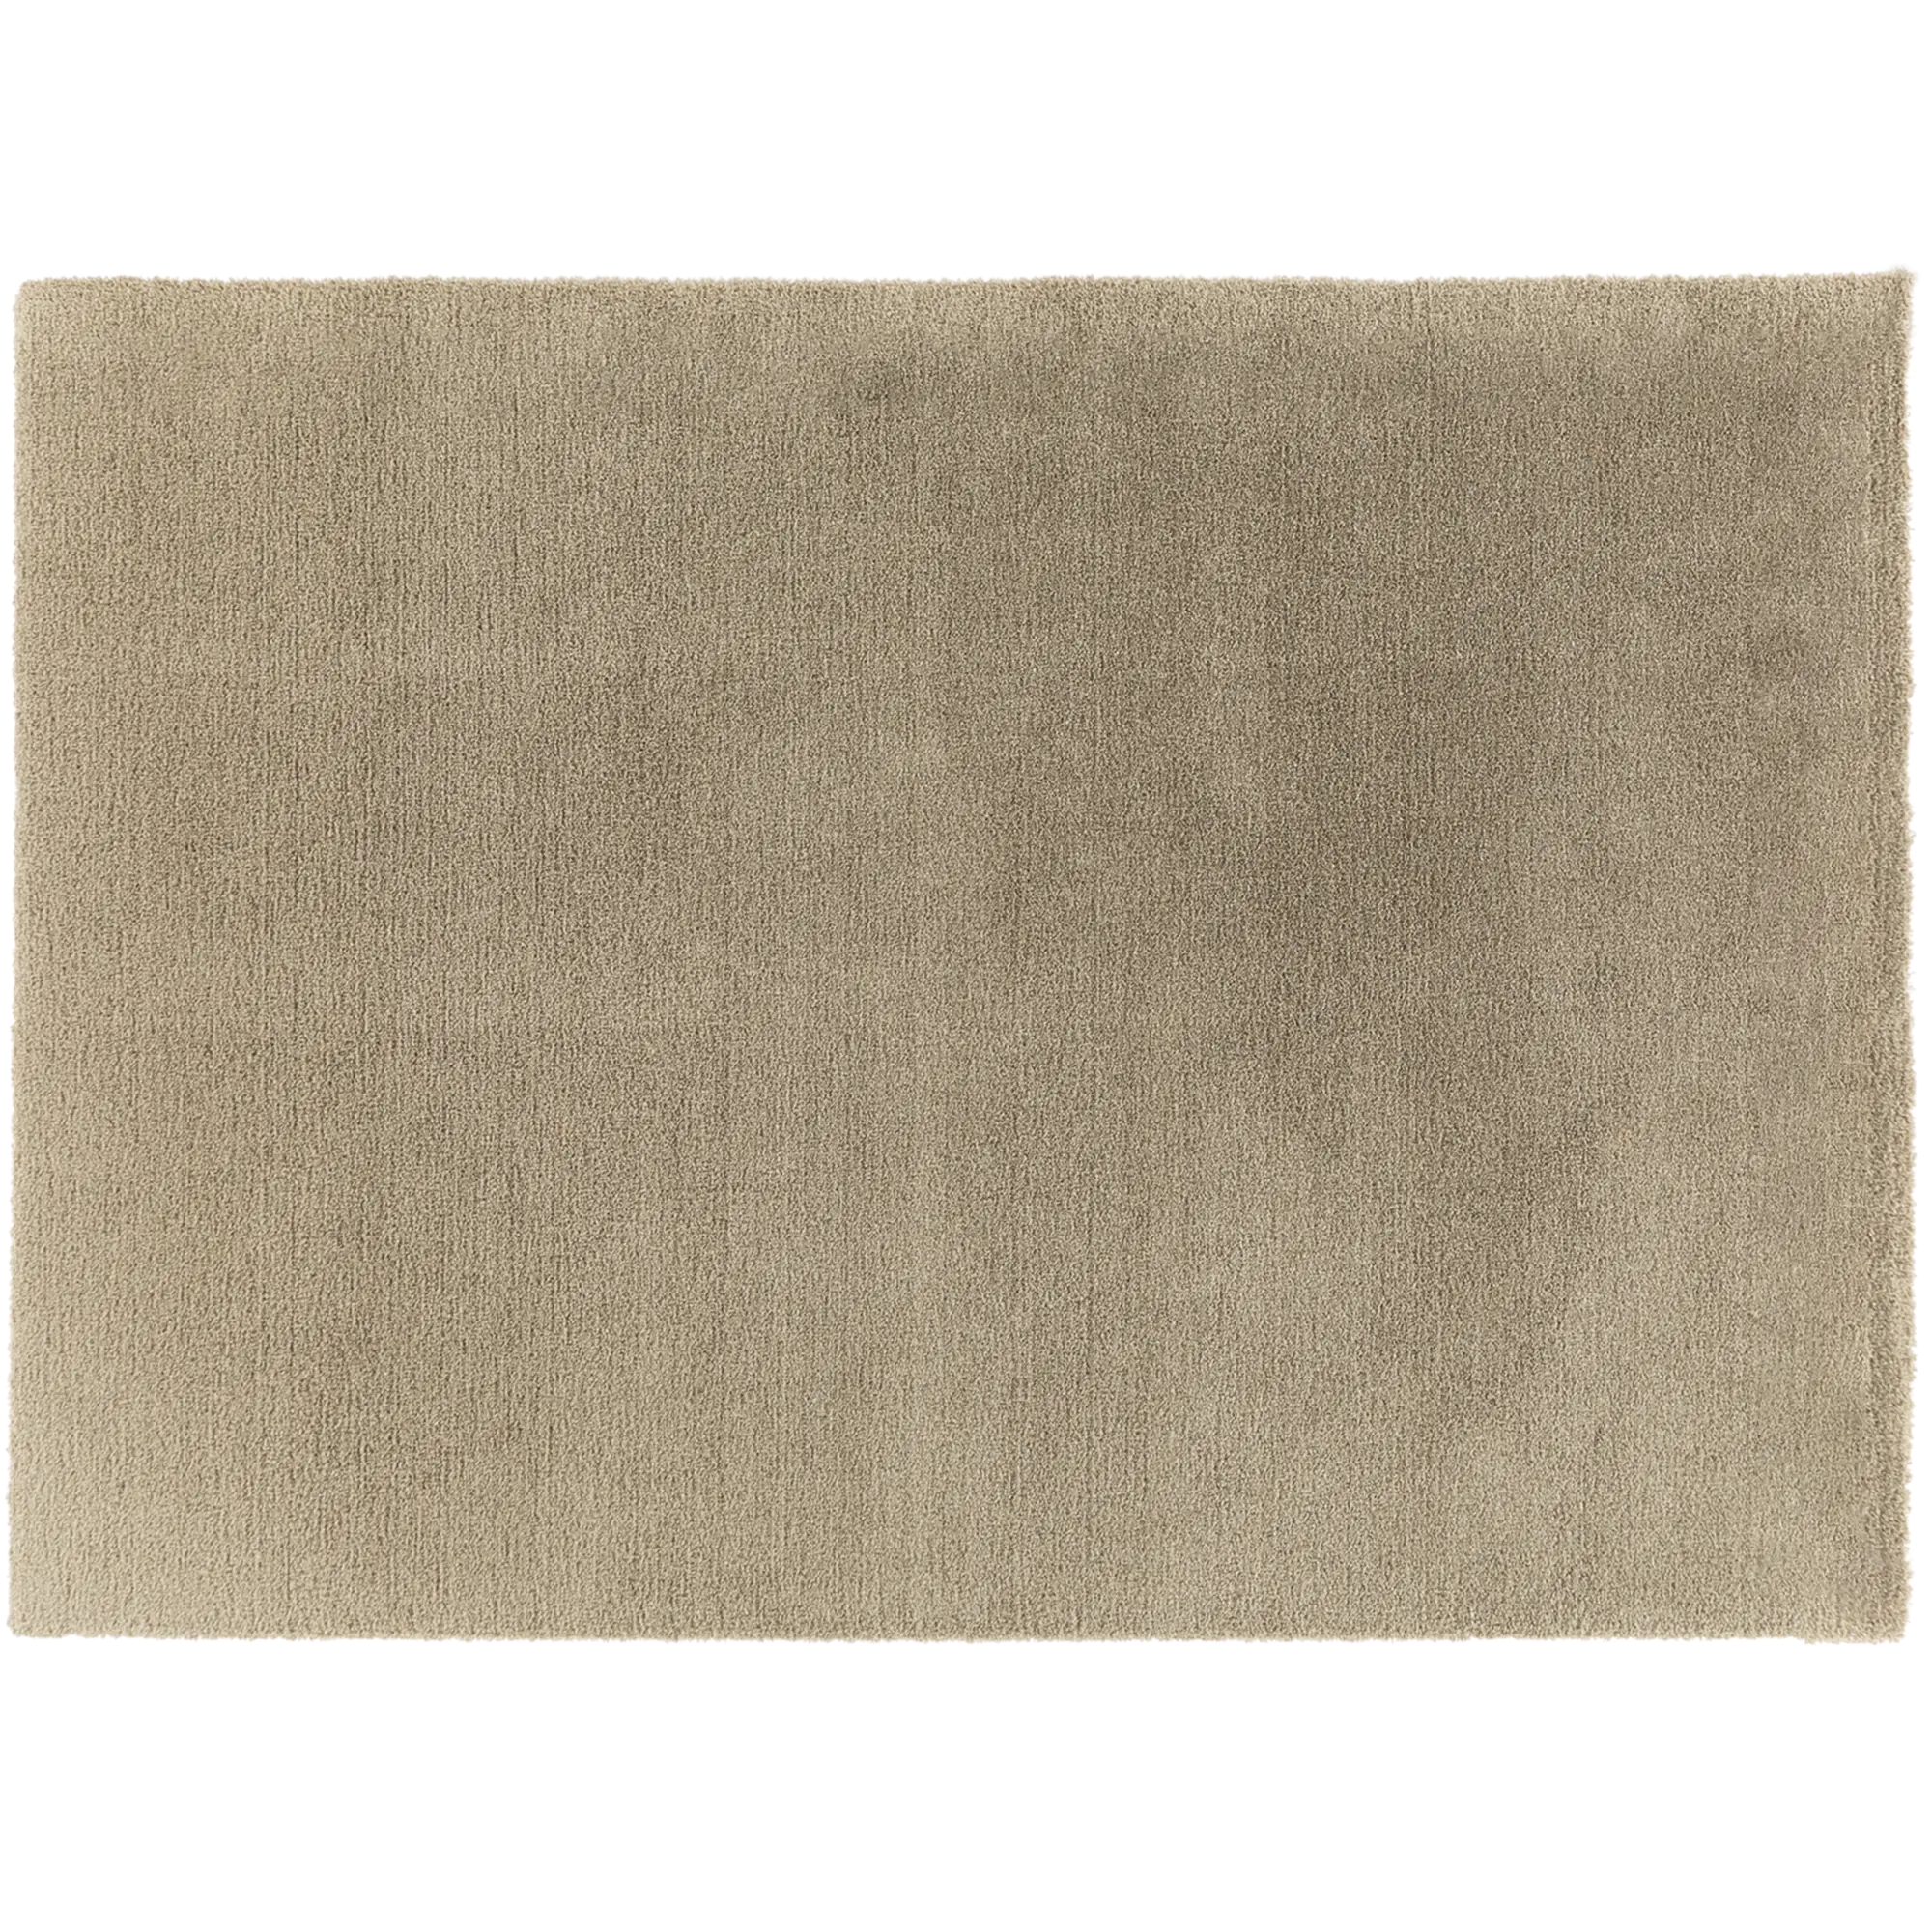 Tappeto per interno Tony in poliestere, beige, 120x170 - 5